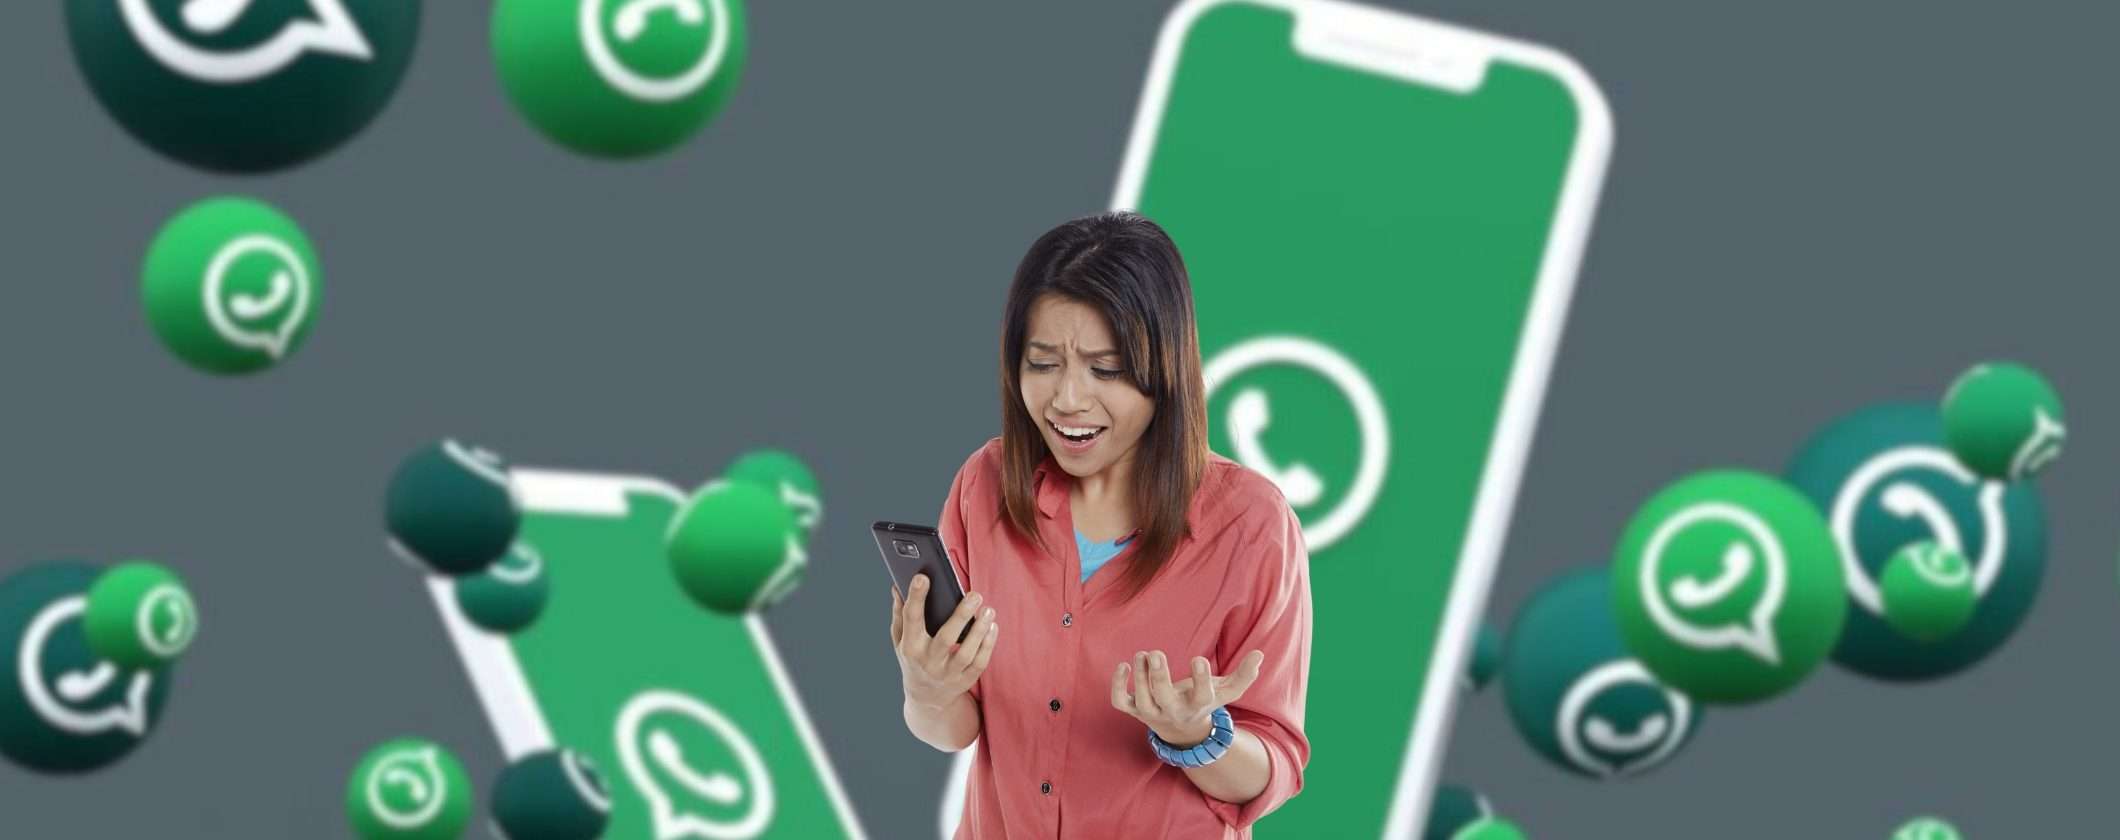 Papà mi è caduto il telefono: come riconoscere la nuova truffa su WhatsApp